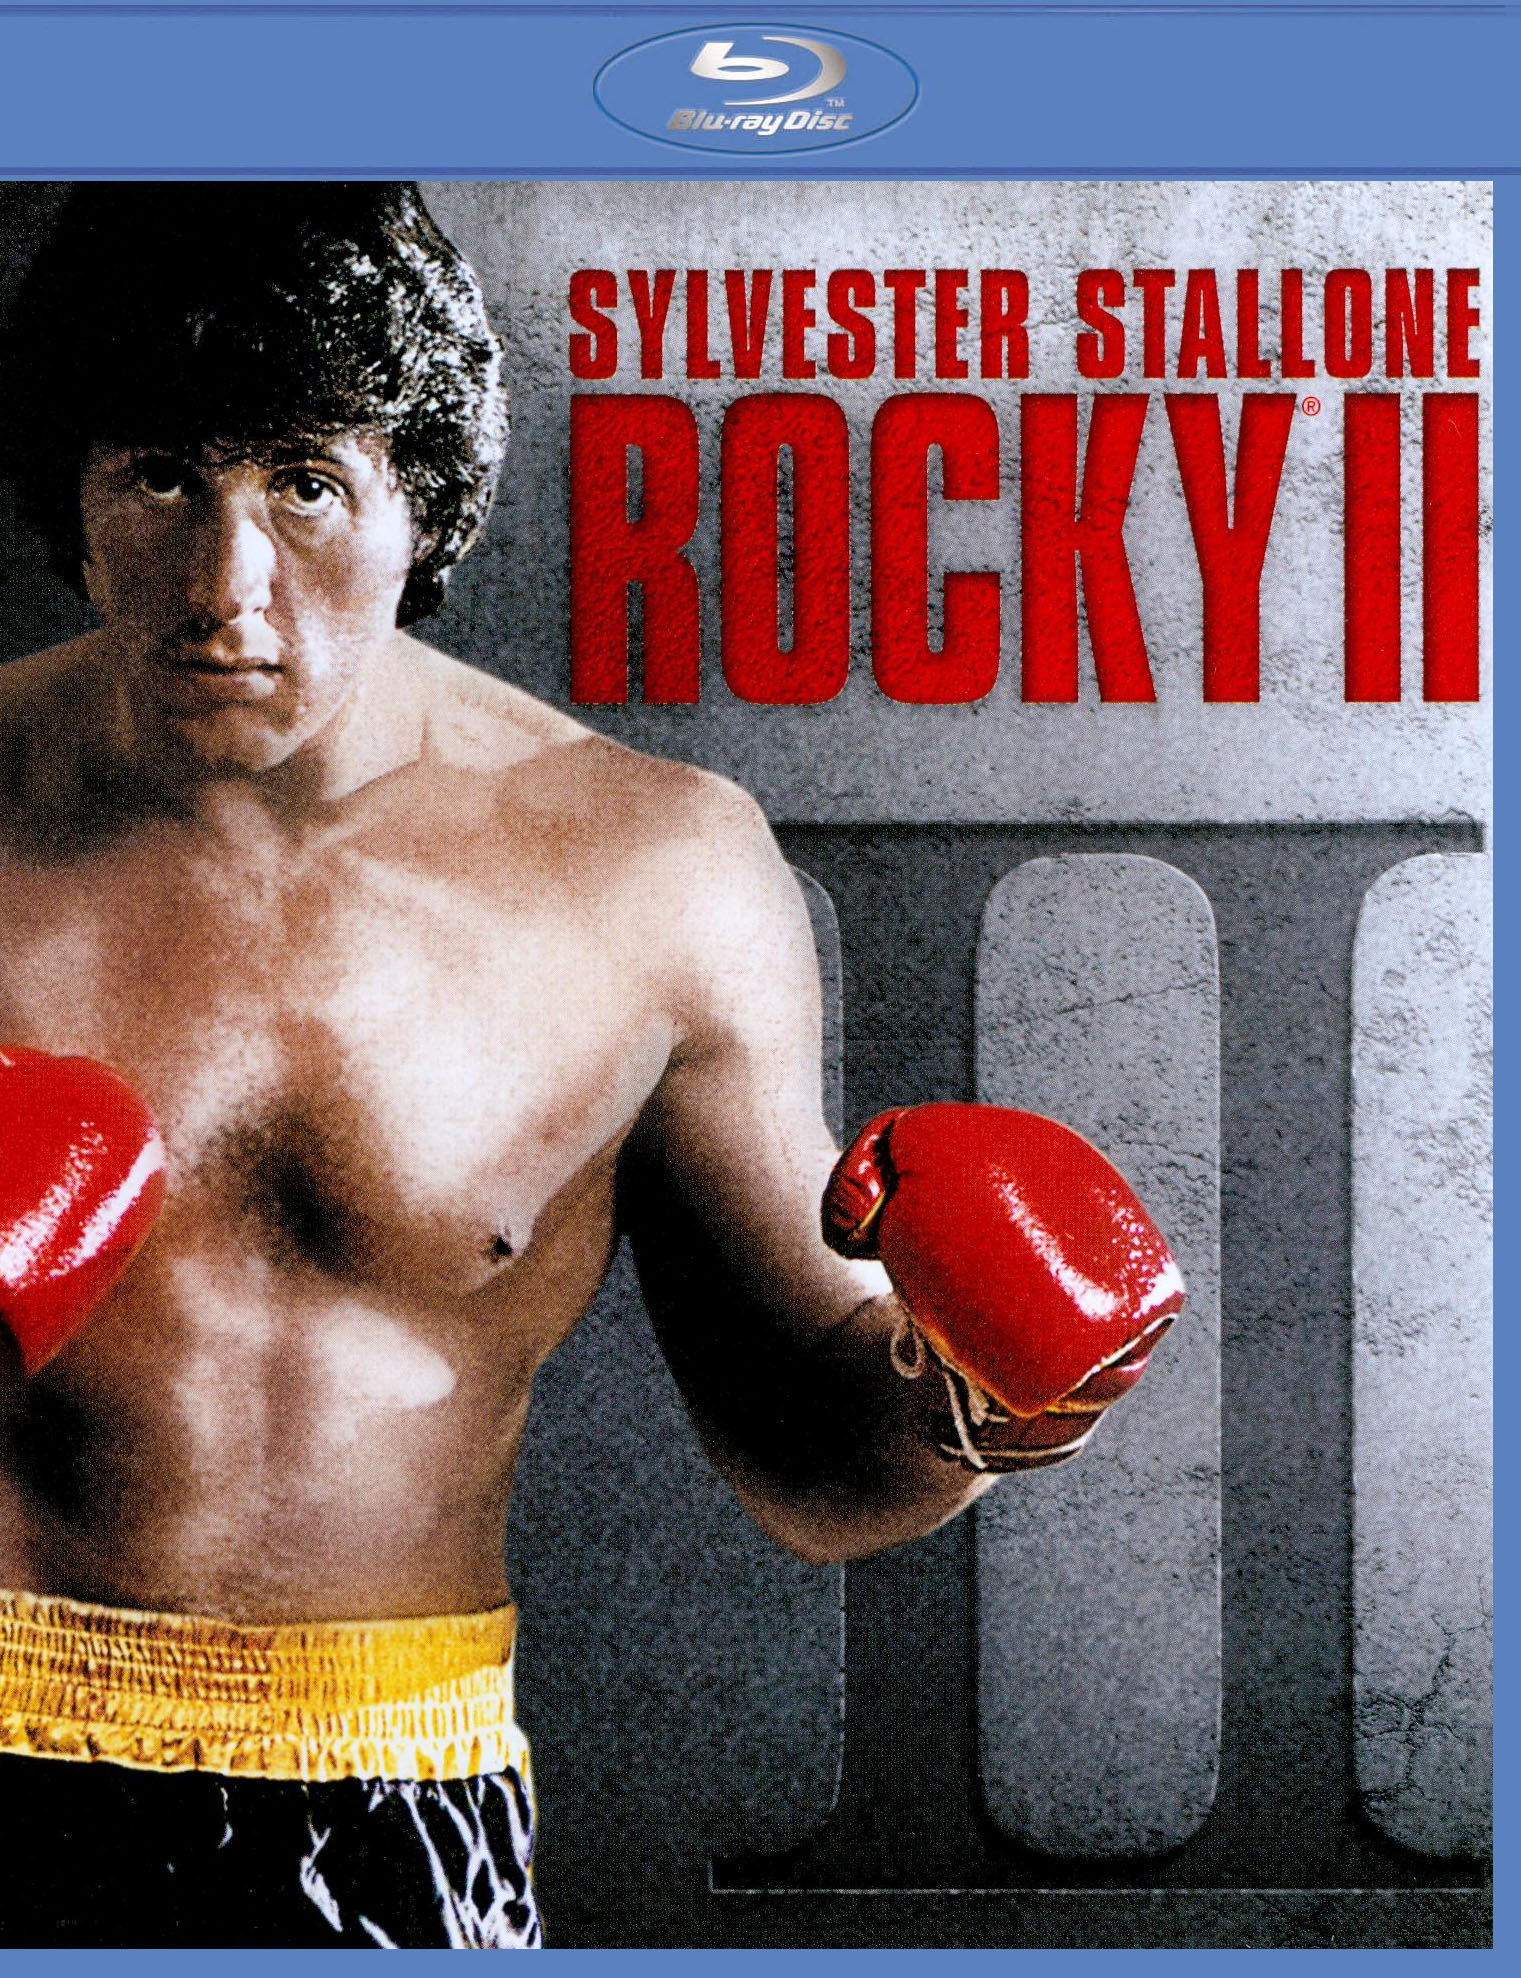 Rocky IV [SteelBook] [Includes Digital Copy] [4K Ultra HD Blu-ray/Blu-ray]  [Only @ Best Buy] [1985] - Best Buy